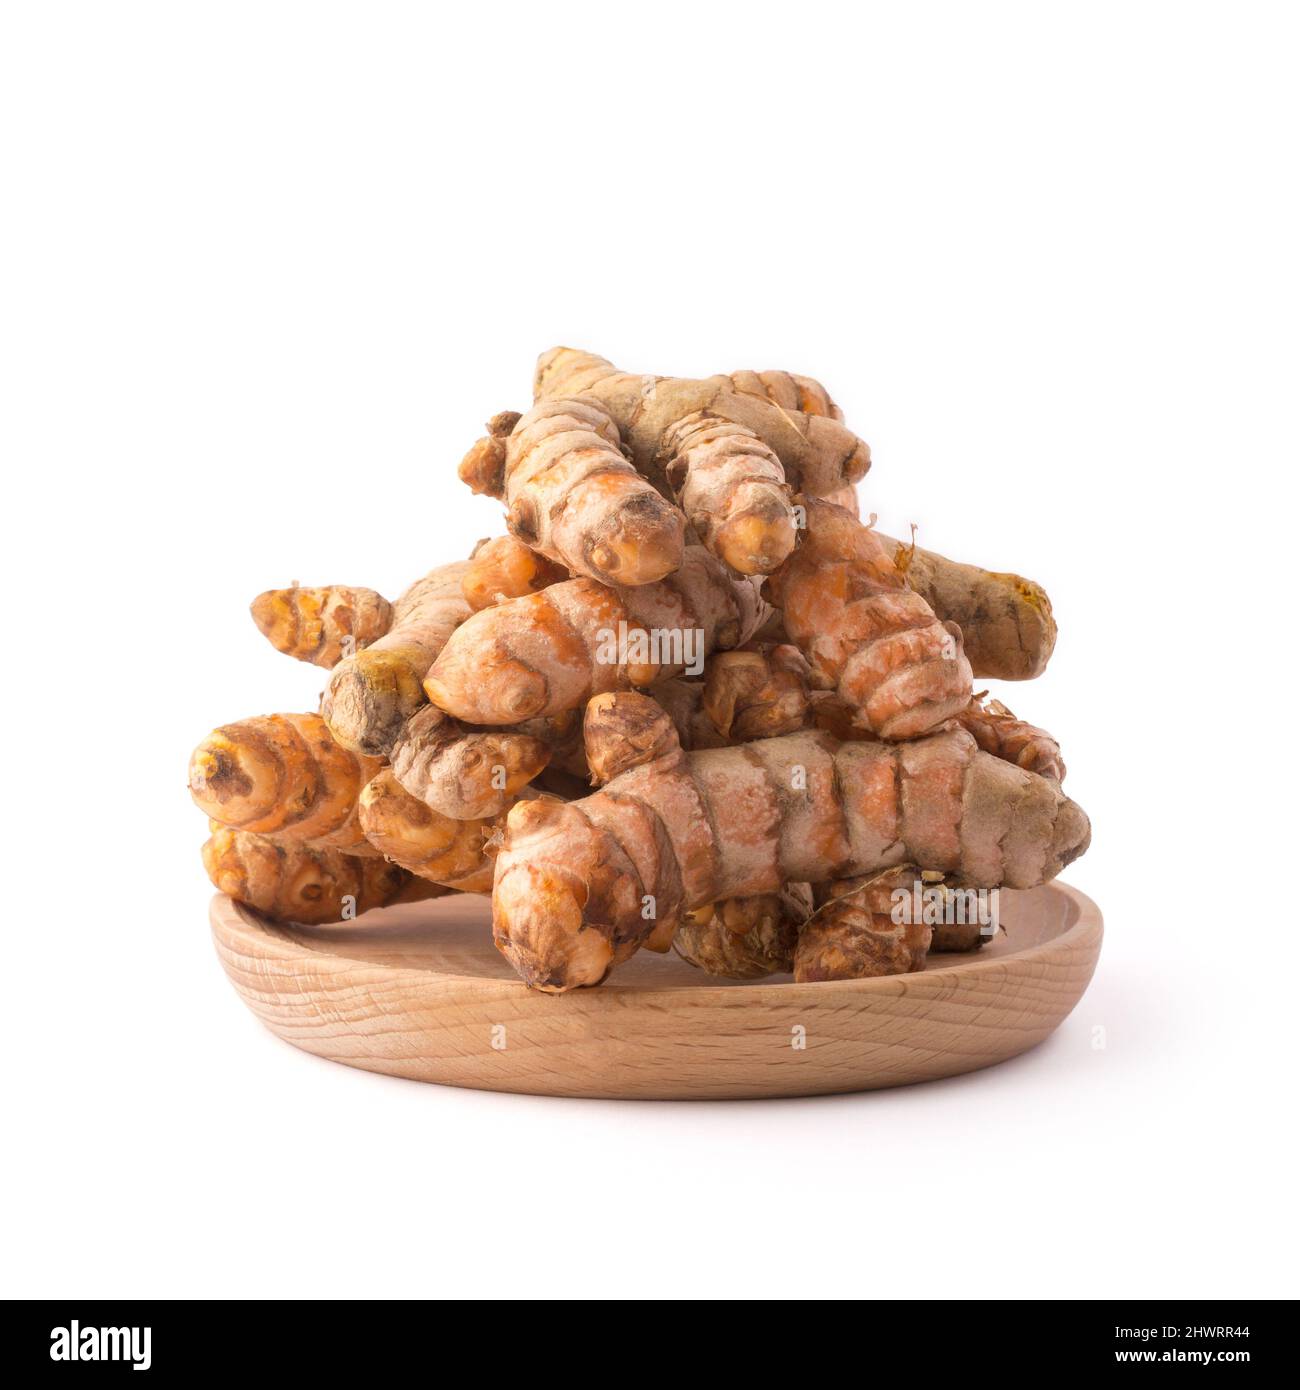 radici curmeriche, tradizionale spezia del sud-est asiatico su un piatto di legno, noto anche per scopi medicinali, isolato su sfondo bianco Foto Stock